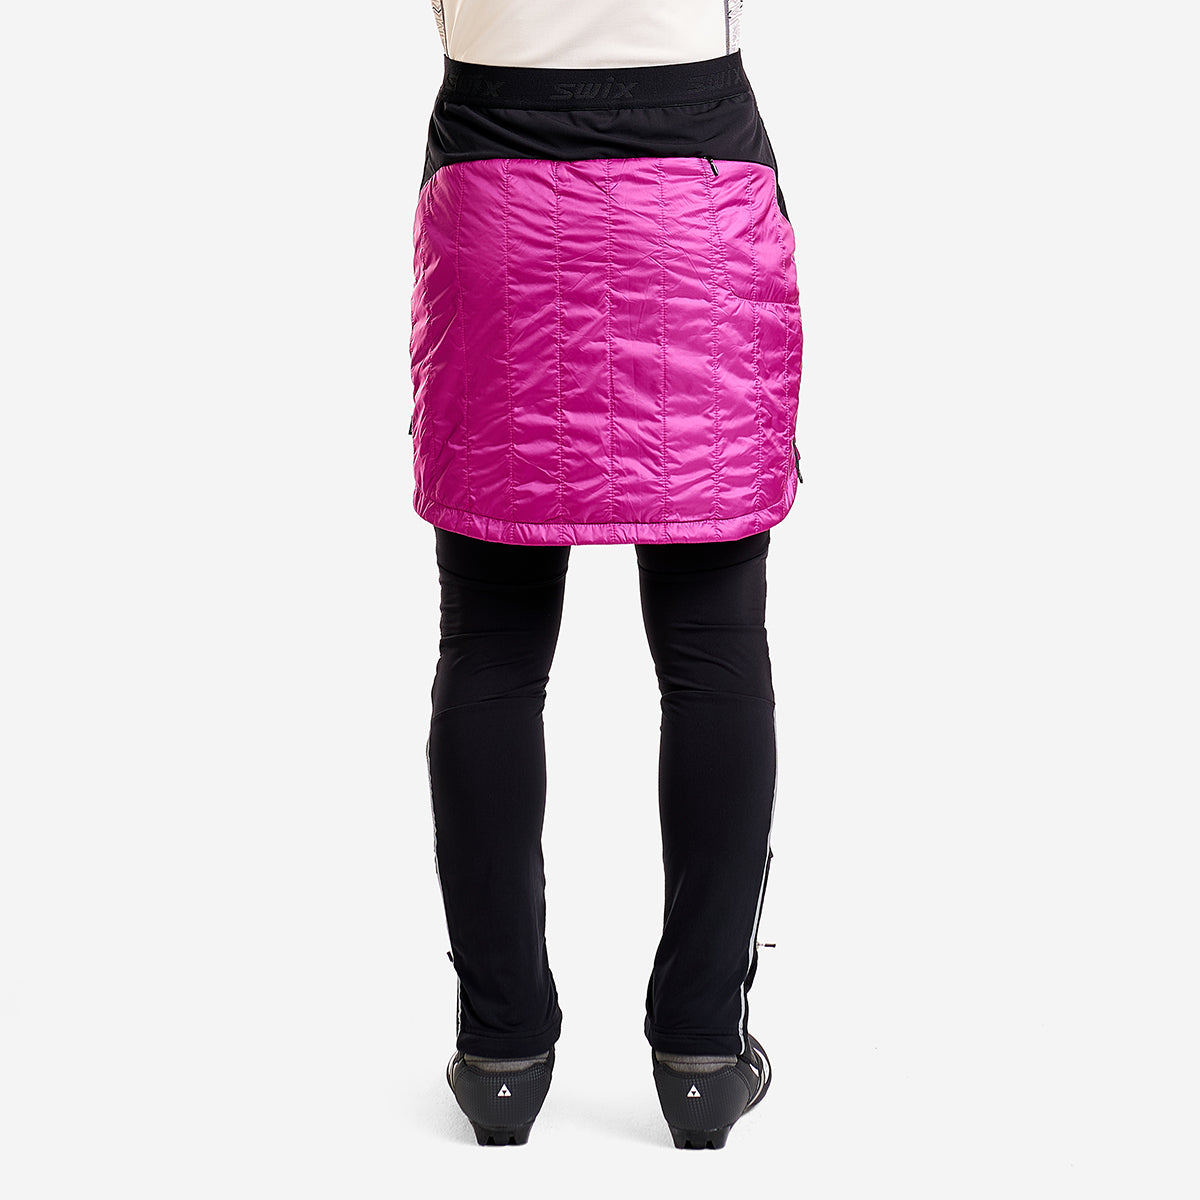 Navado - Women's Skirt